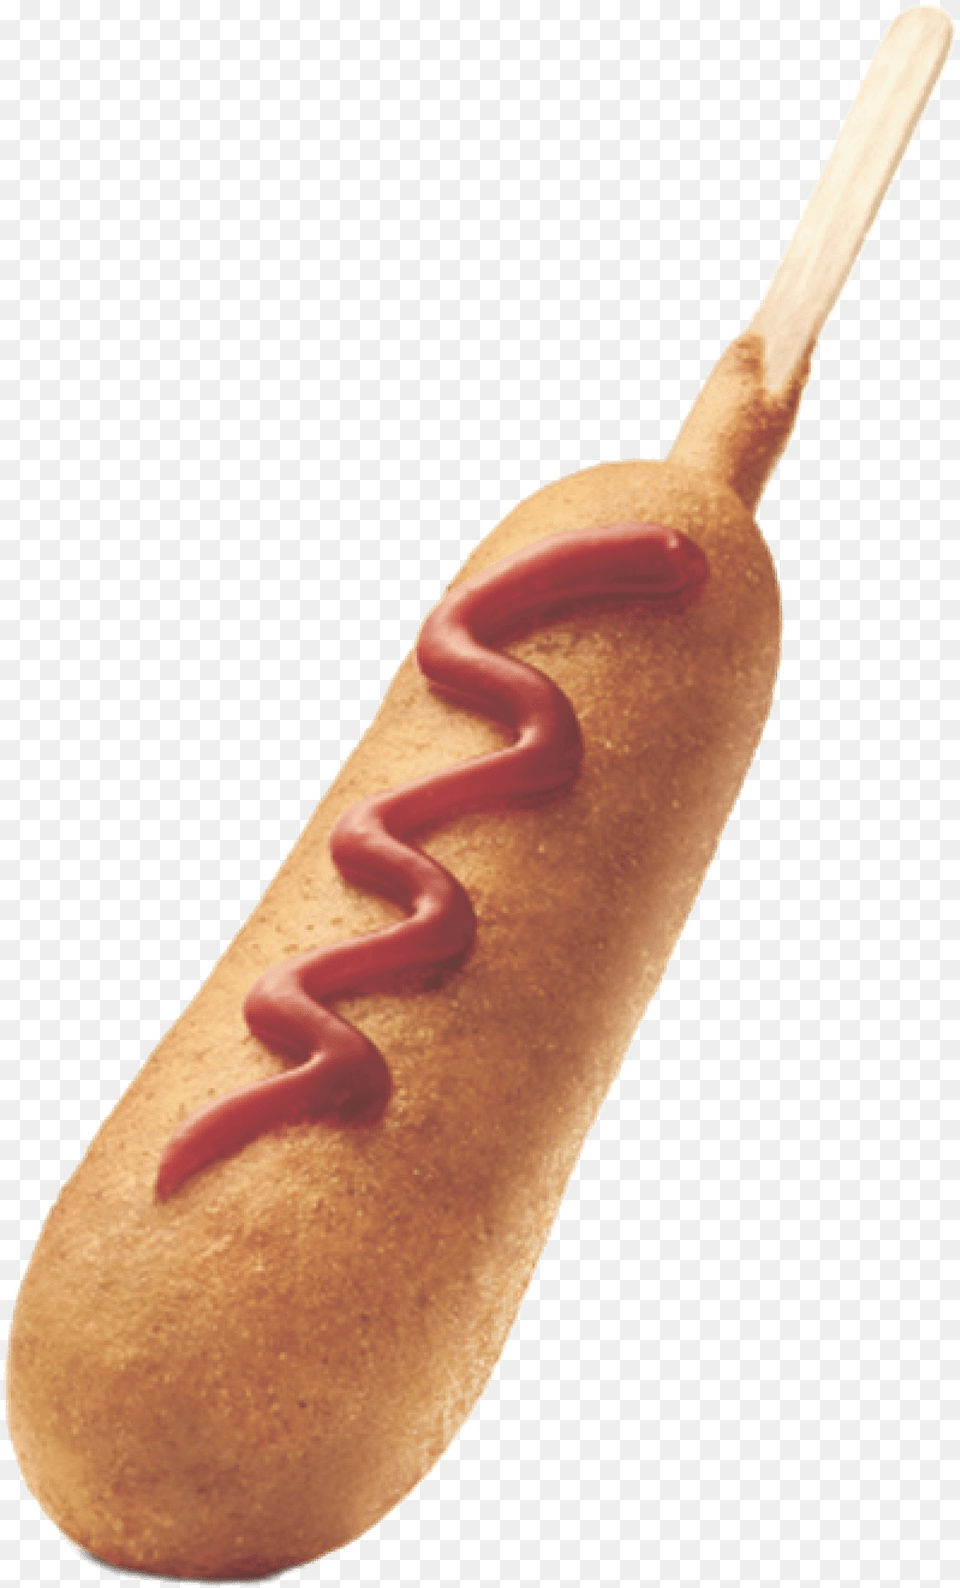 Corn Dog With Ketchup Clip Arts Corn Dog With Ketchup, Food, Hot Dog Free Png